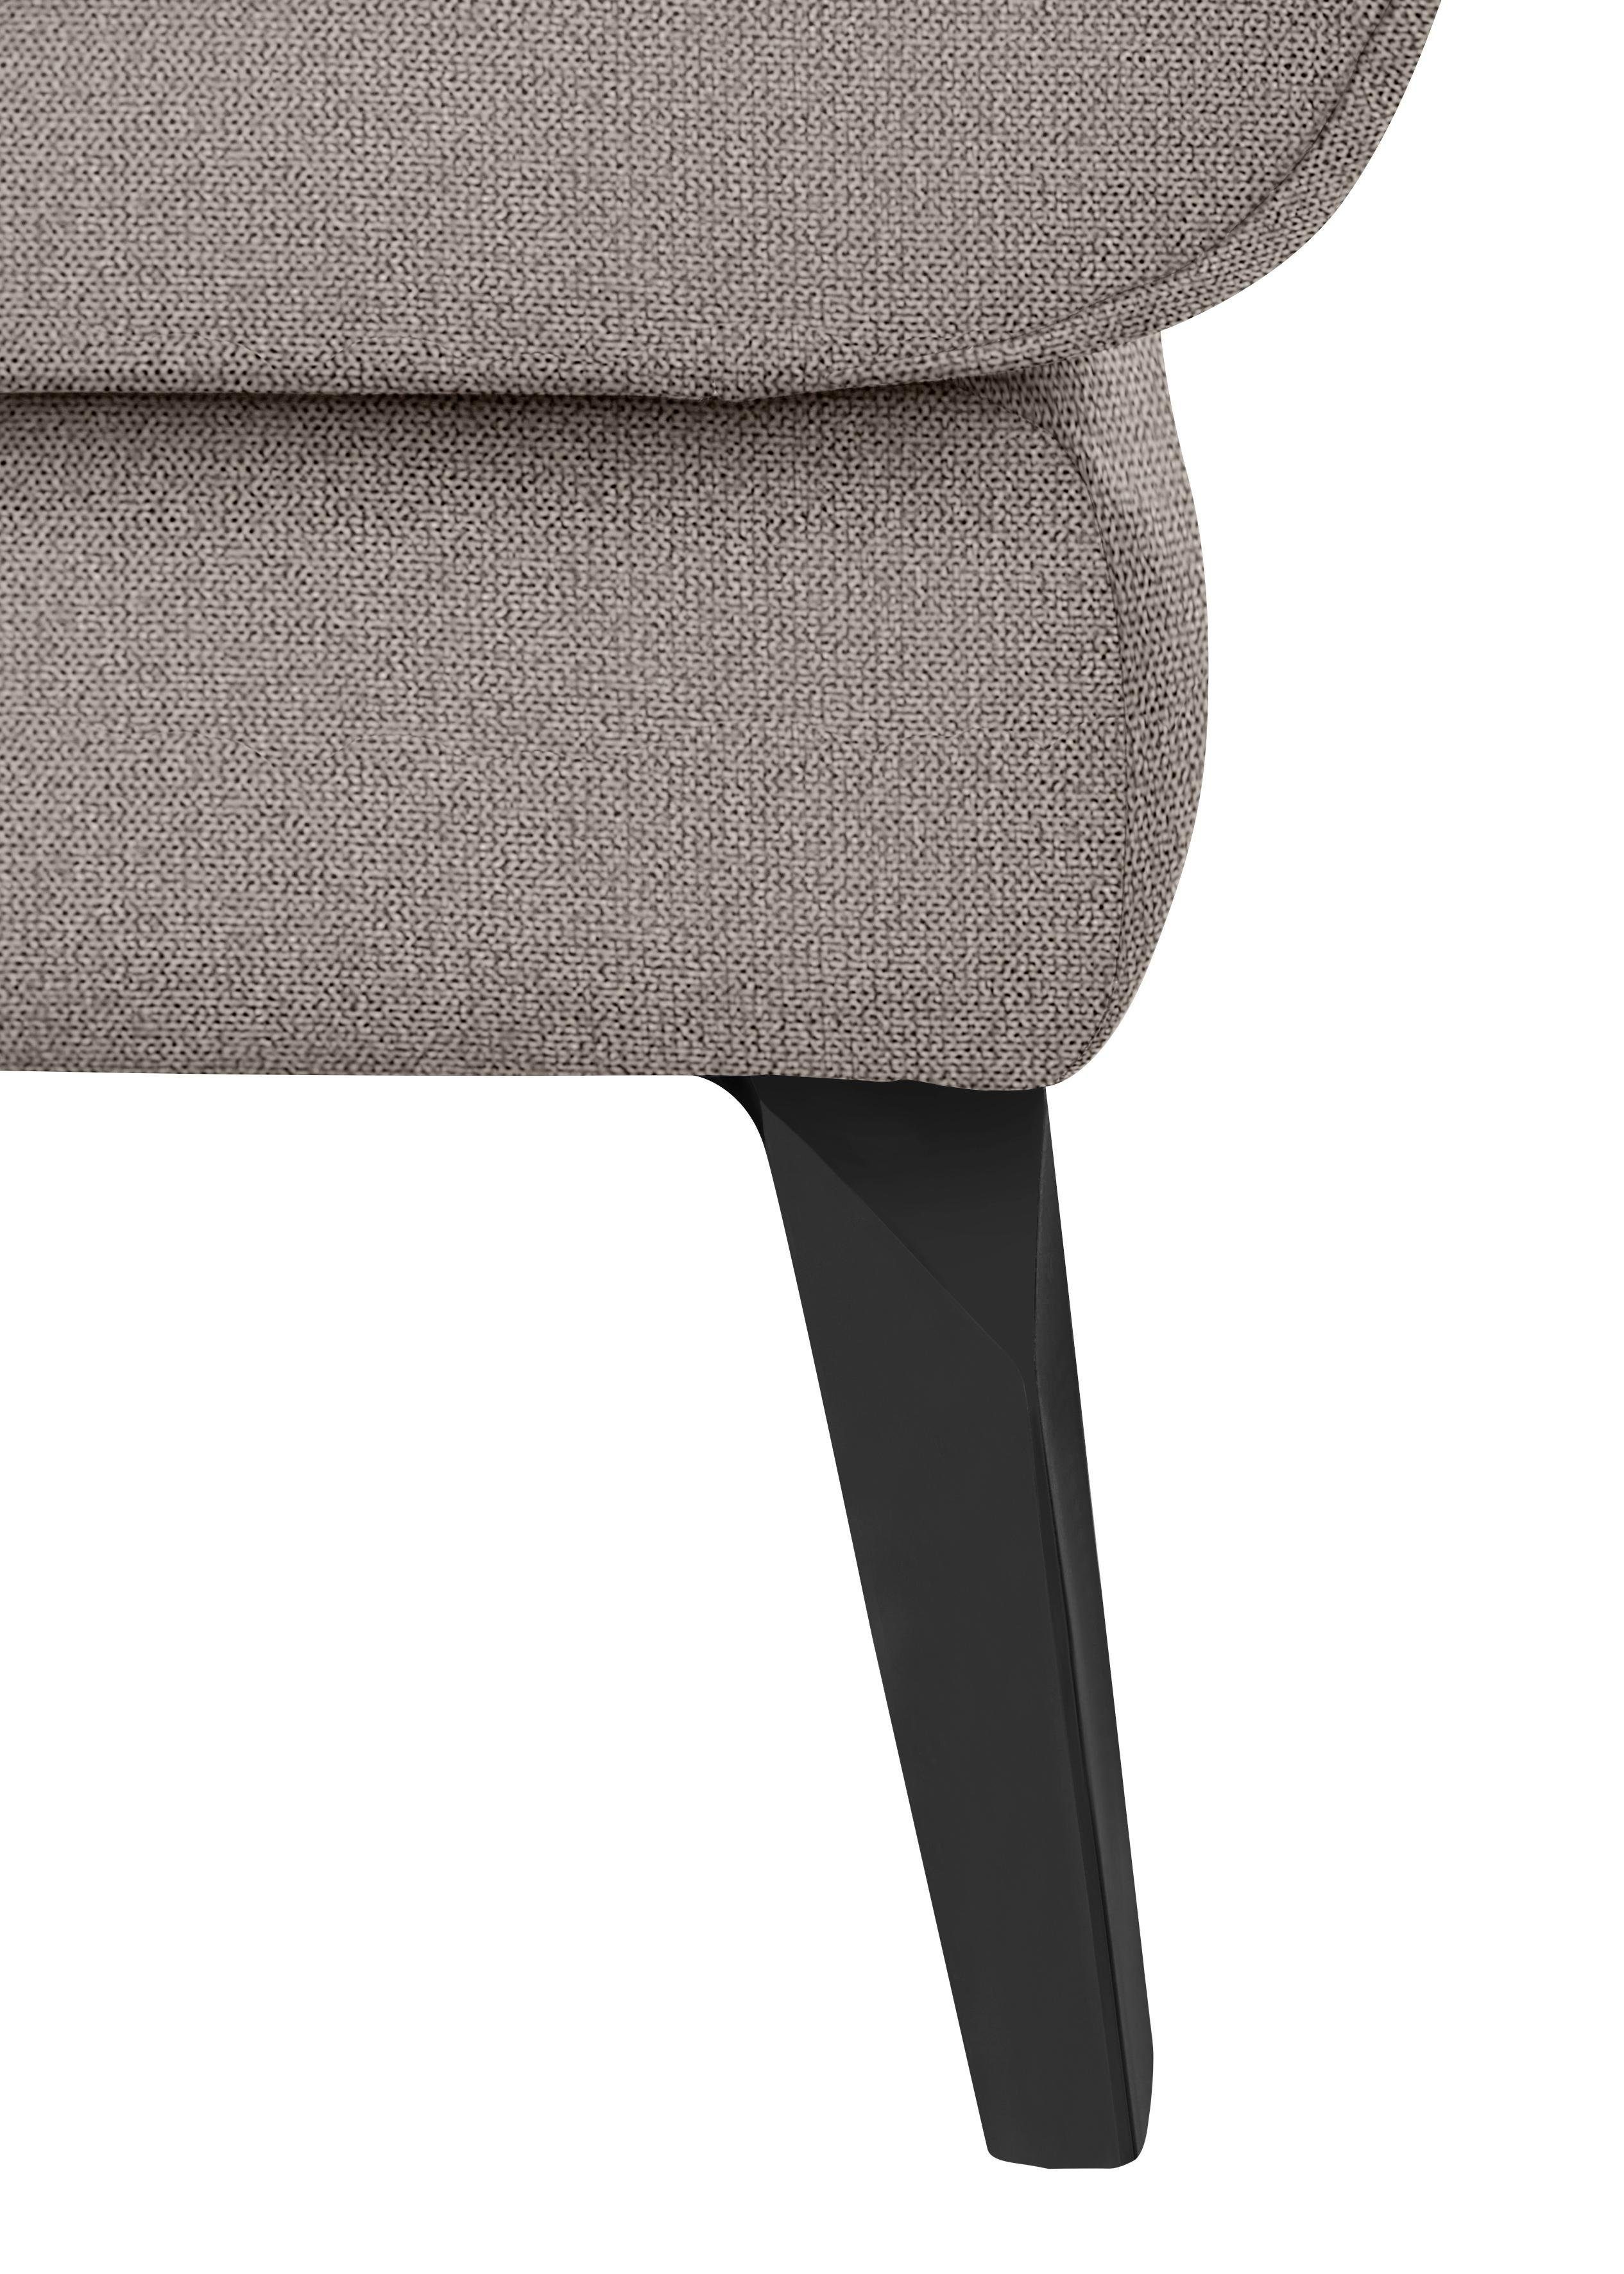 softy, pulverbeschichtet im Füße dekorativer schwarz W.SCHILLIG Heftung Sitz, mit Chaiselongue